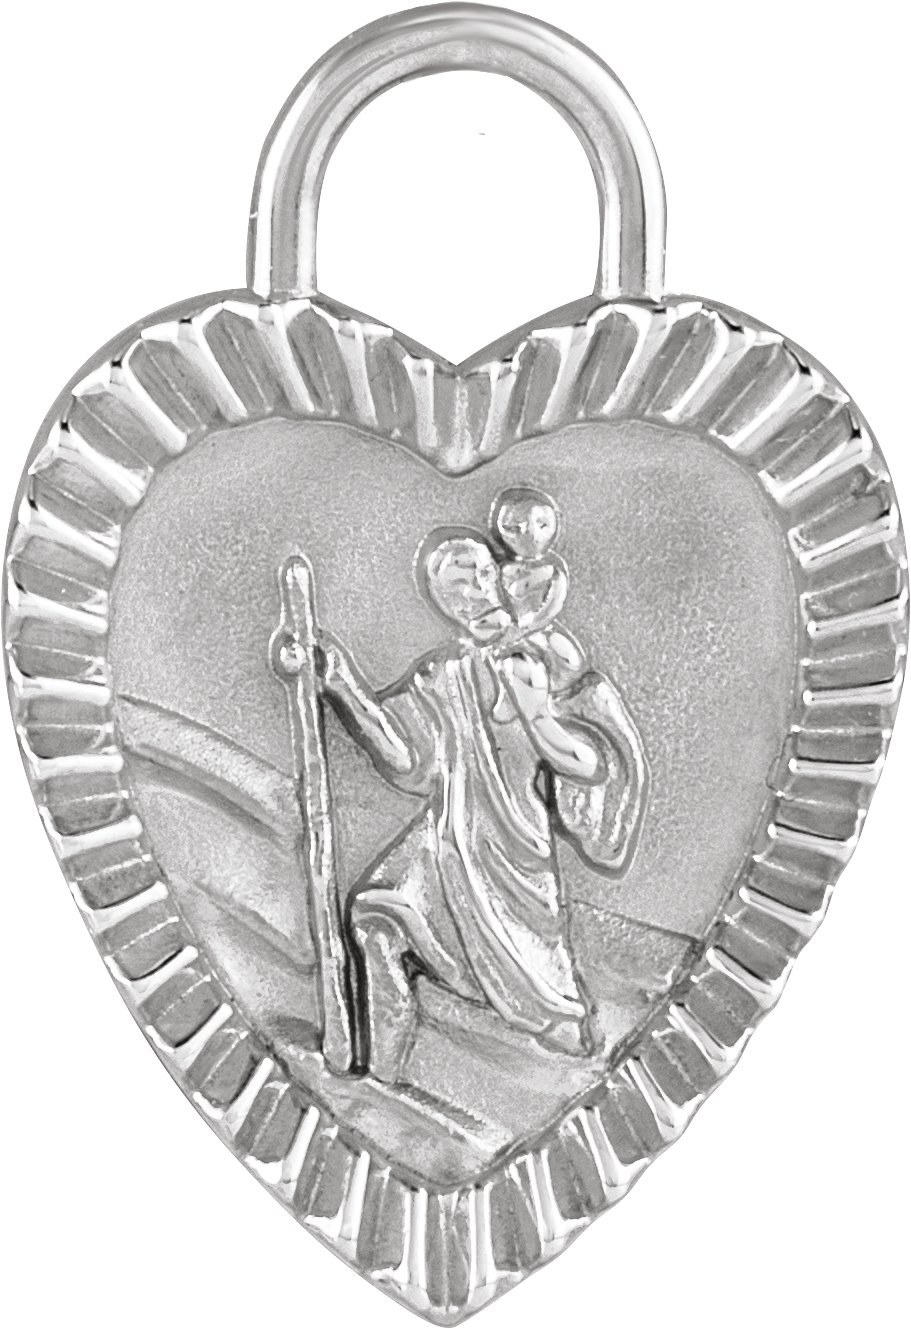 Platinum St. Christopher Heart Medal Charm/Pendant